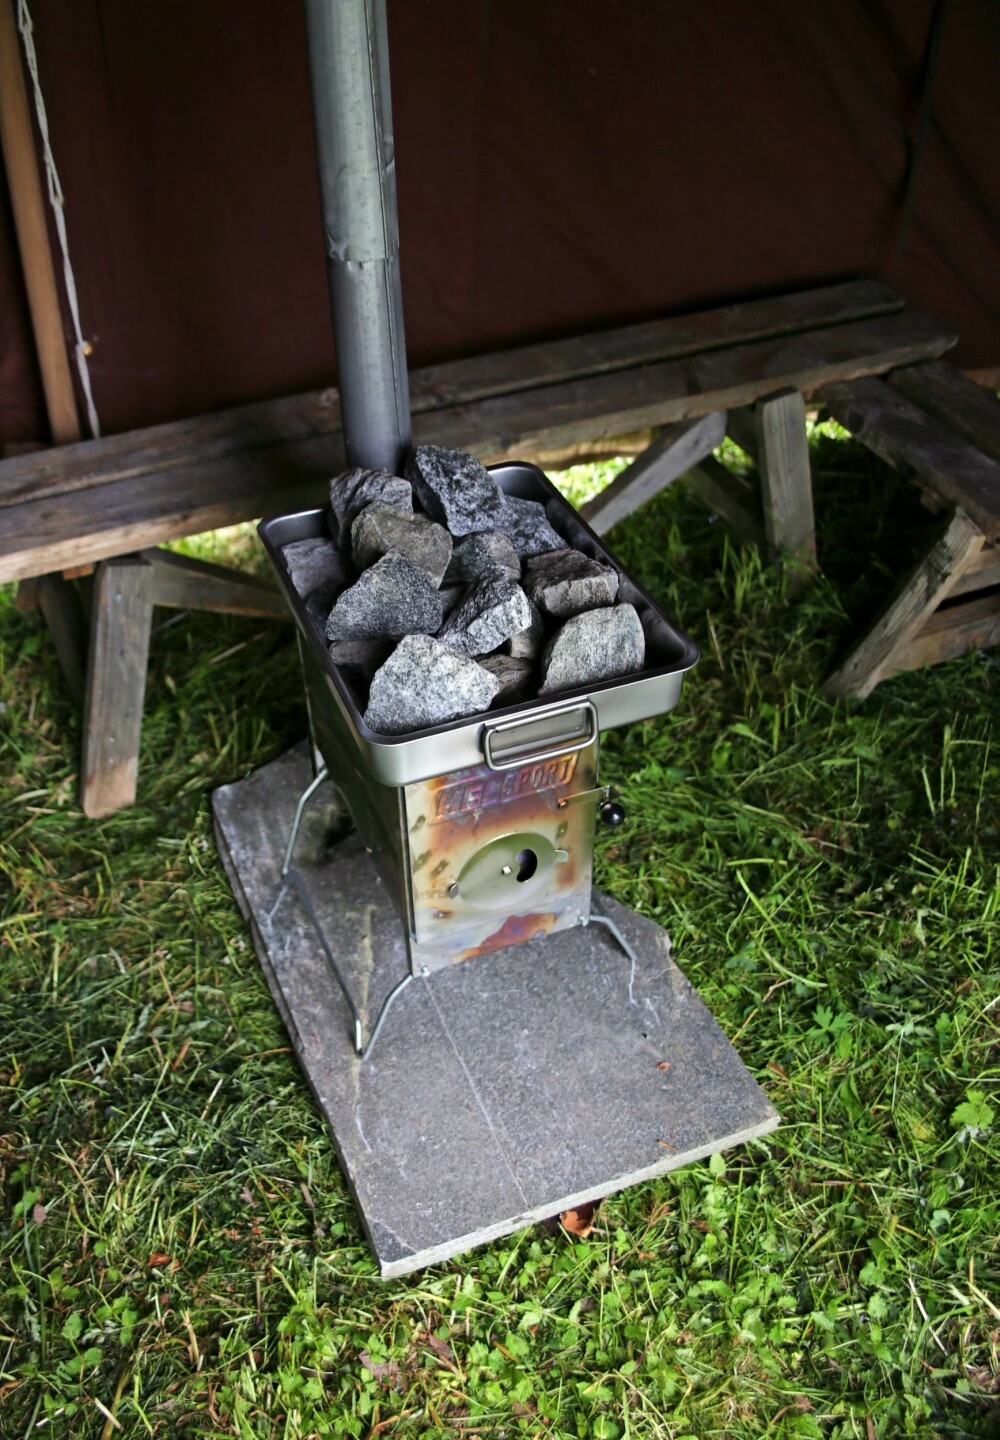 STØDIG OG SIKKER: Fjern brennbart materiale og sett ovnen på en skiferplate som ligger stabilt.